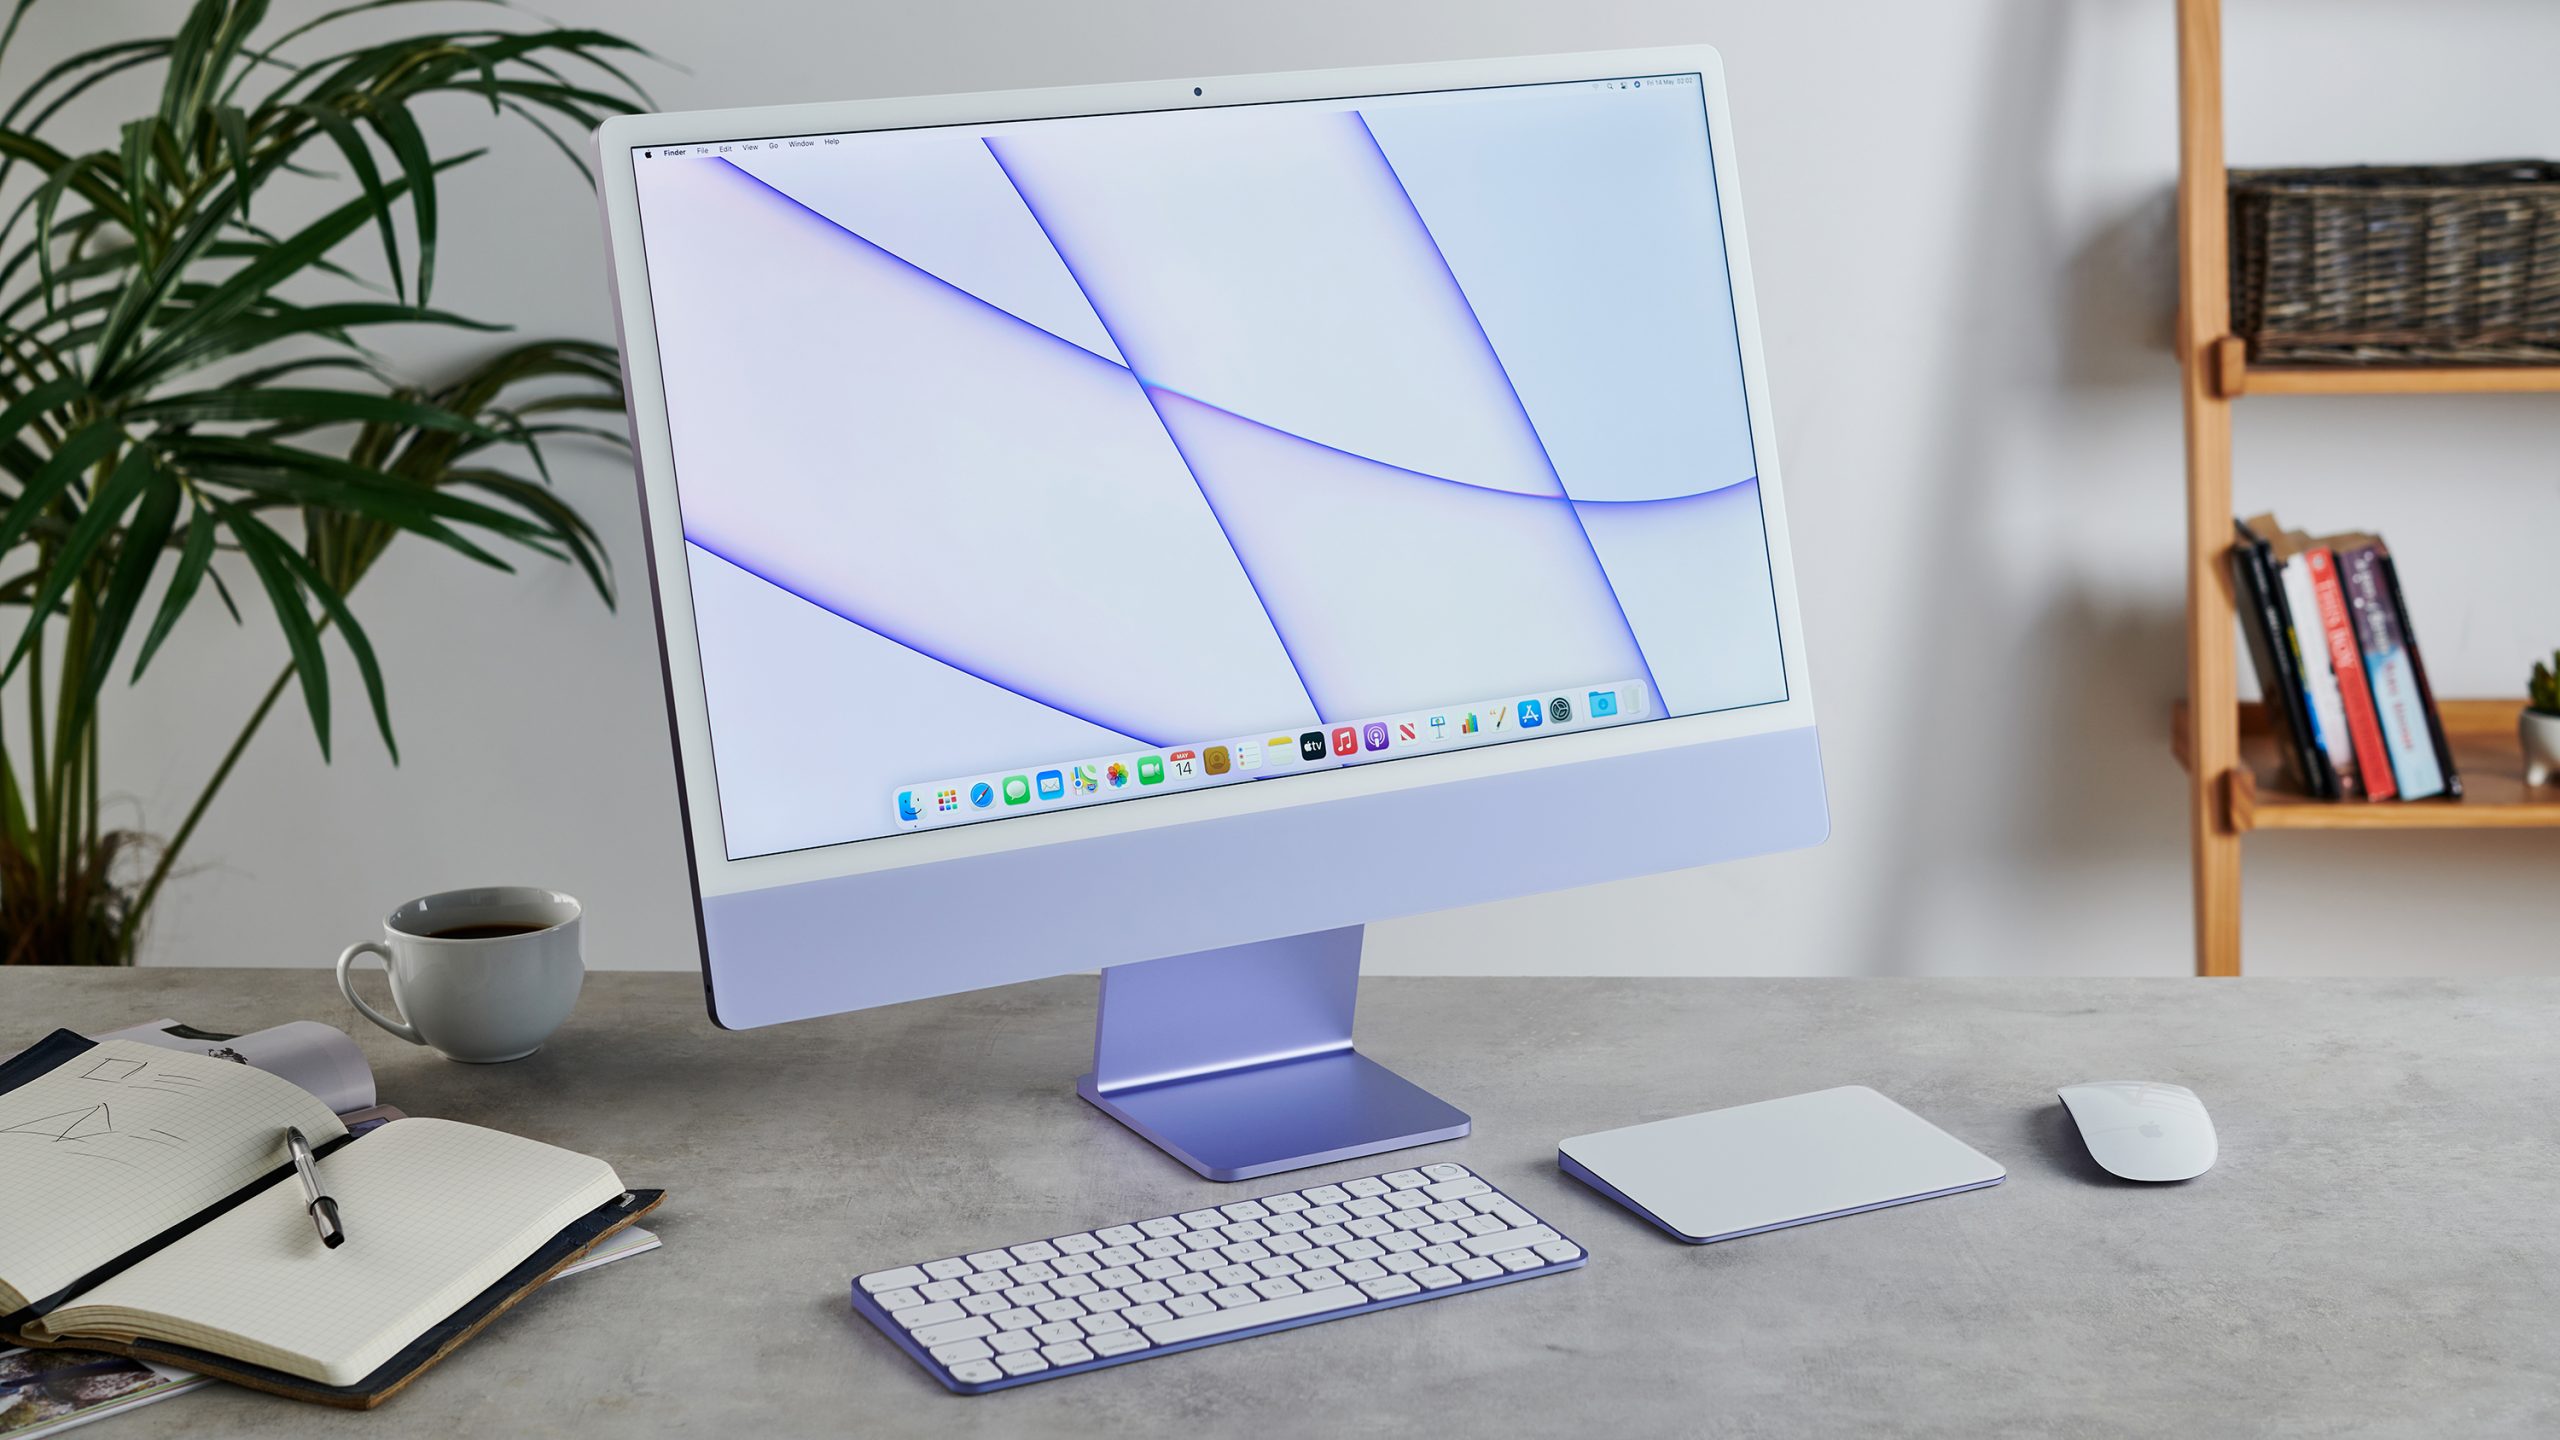 mac computer desktop box